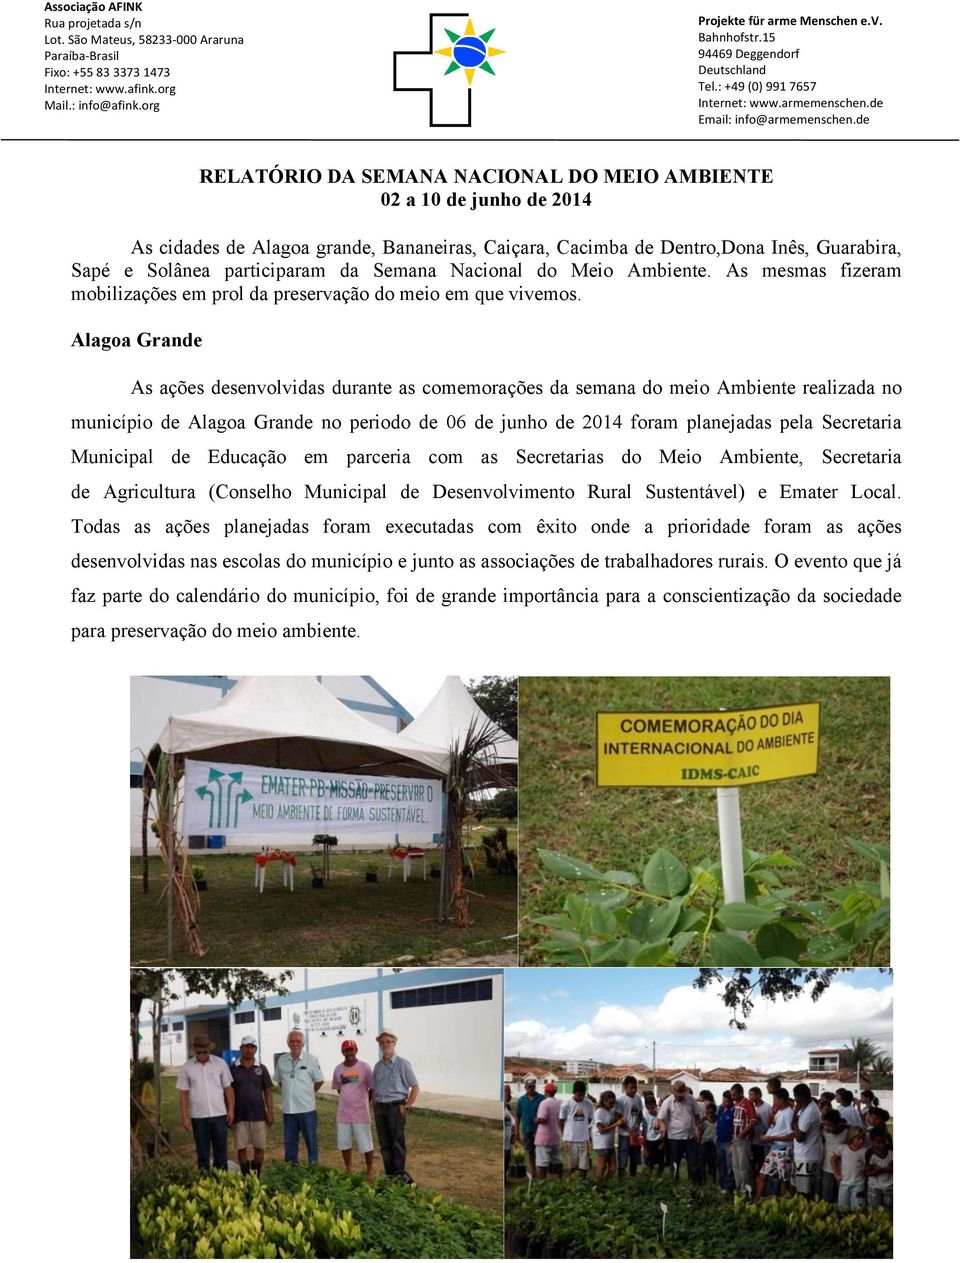 Alagoa Grande As ações desenvolvidas durante as comemorações da semana do meio Ambiente realizada no município de Alagoa Grande no periodo de 06 de junho de 2014 foram planejadas pela Secretaria